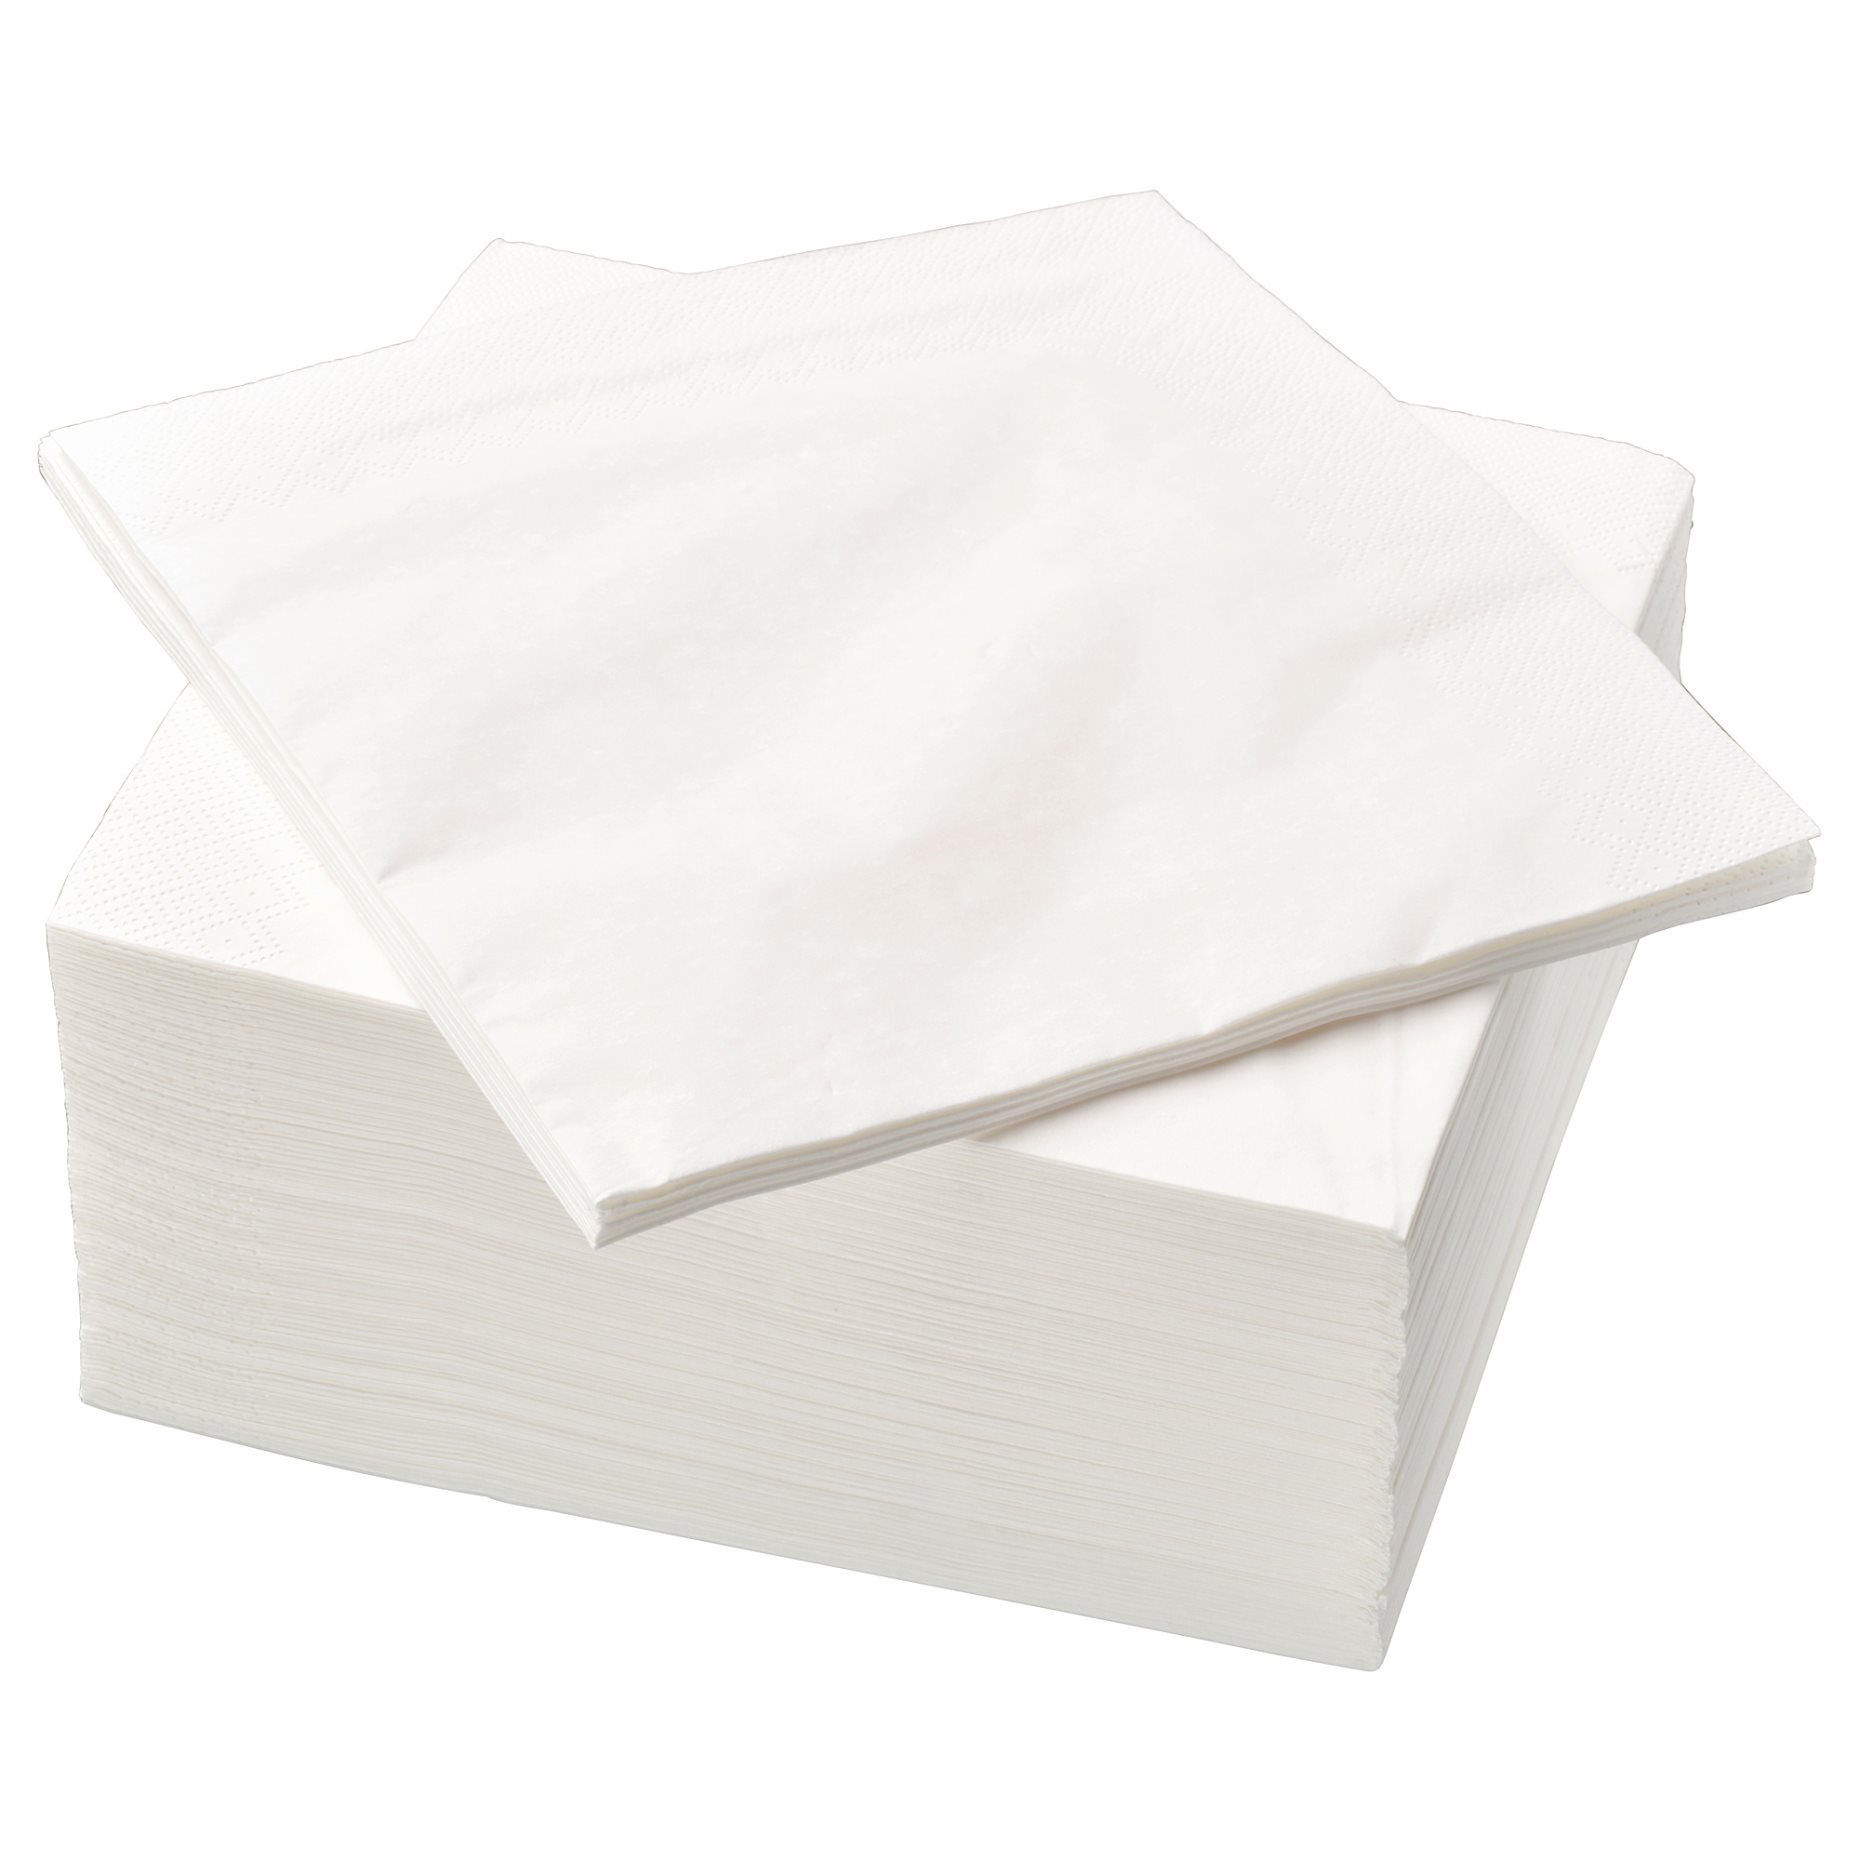 FANTASTISK, paper napkin, 100 pack, 750g, 500.357.52